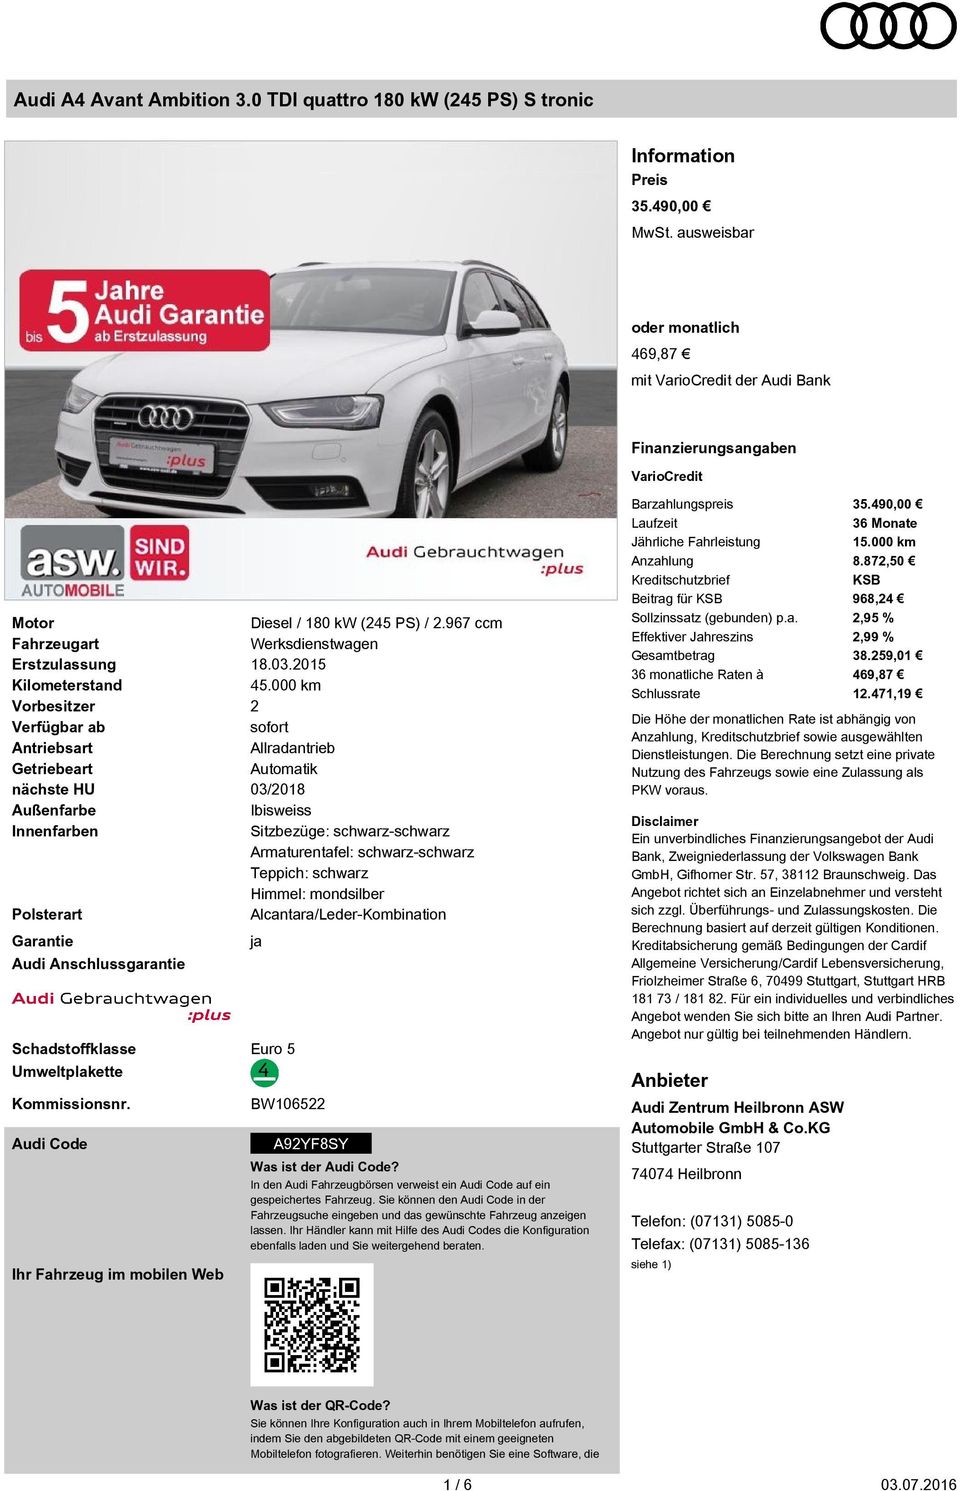 nächste HU Außenfarbe Innenfarben Polsterart Garantie Audi Anschlussgarantie Schadstoffklasse Euro 5 Umweltplakette Kommissionsnr. Audi Code Ihr Fahrzeug im mobilen Web Diesel / 180 kw (245 PS) / 2.